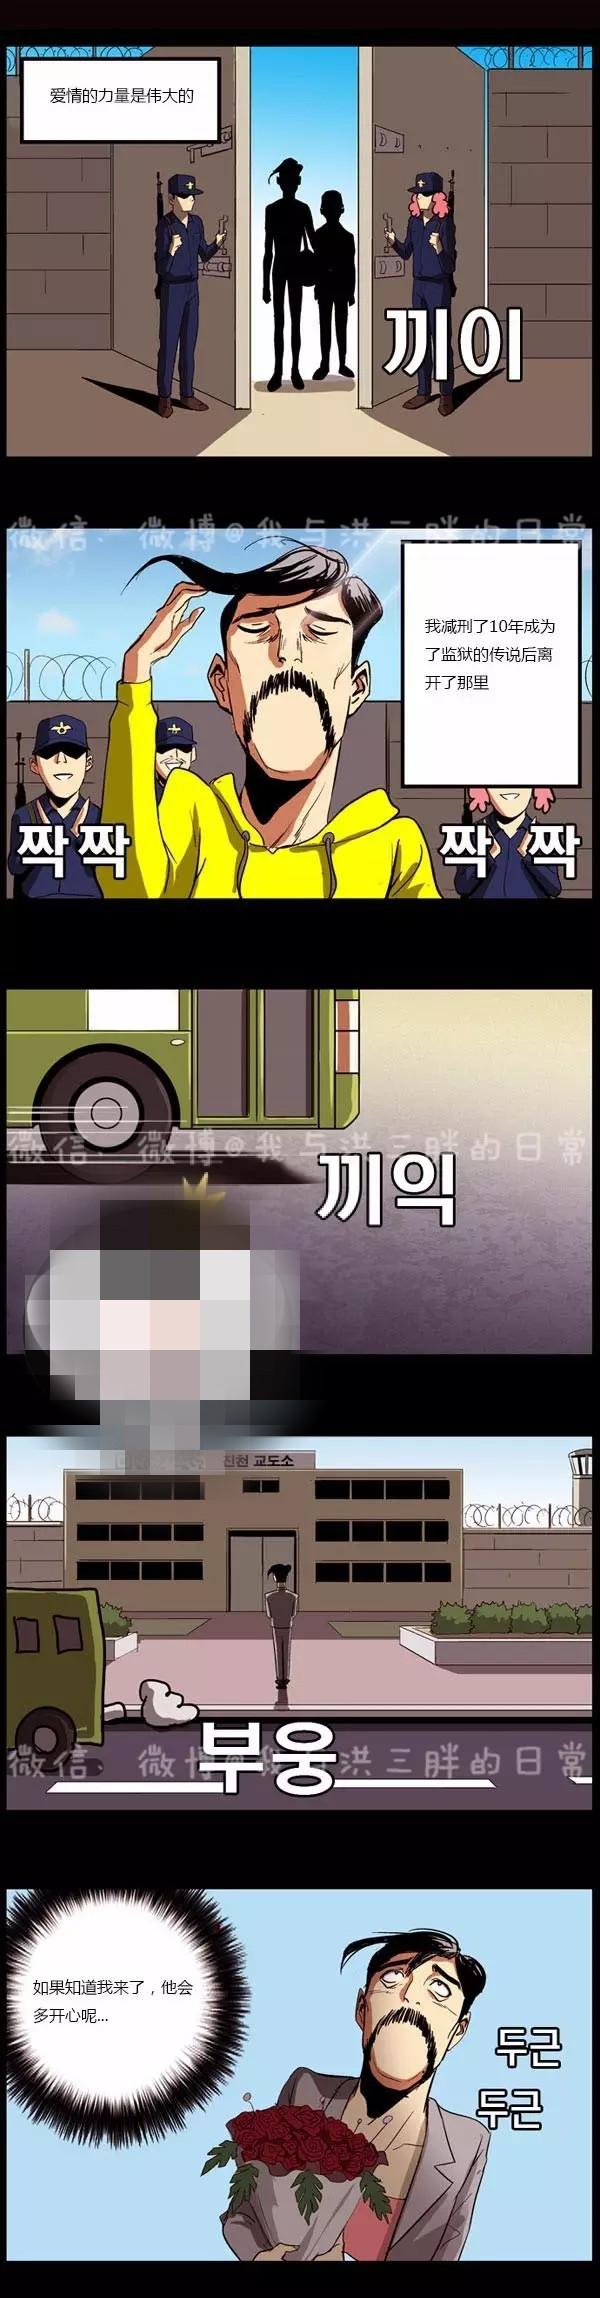 韩国搞笑漫画《狱友的爱》那是禁止的爱